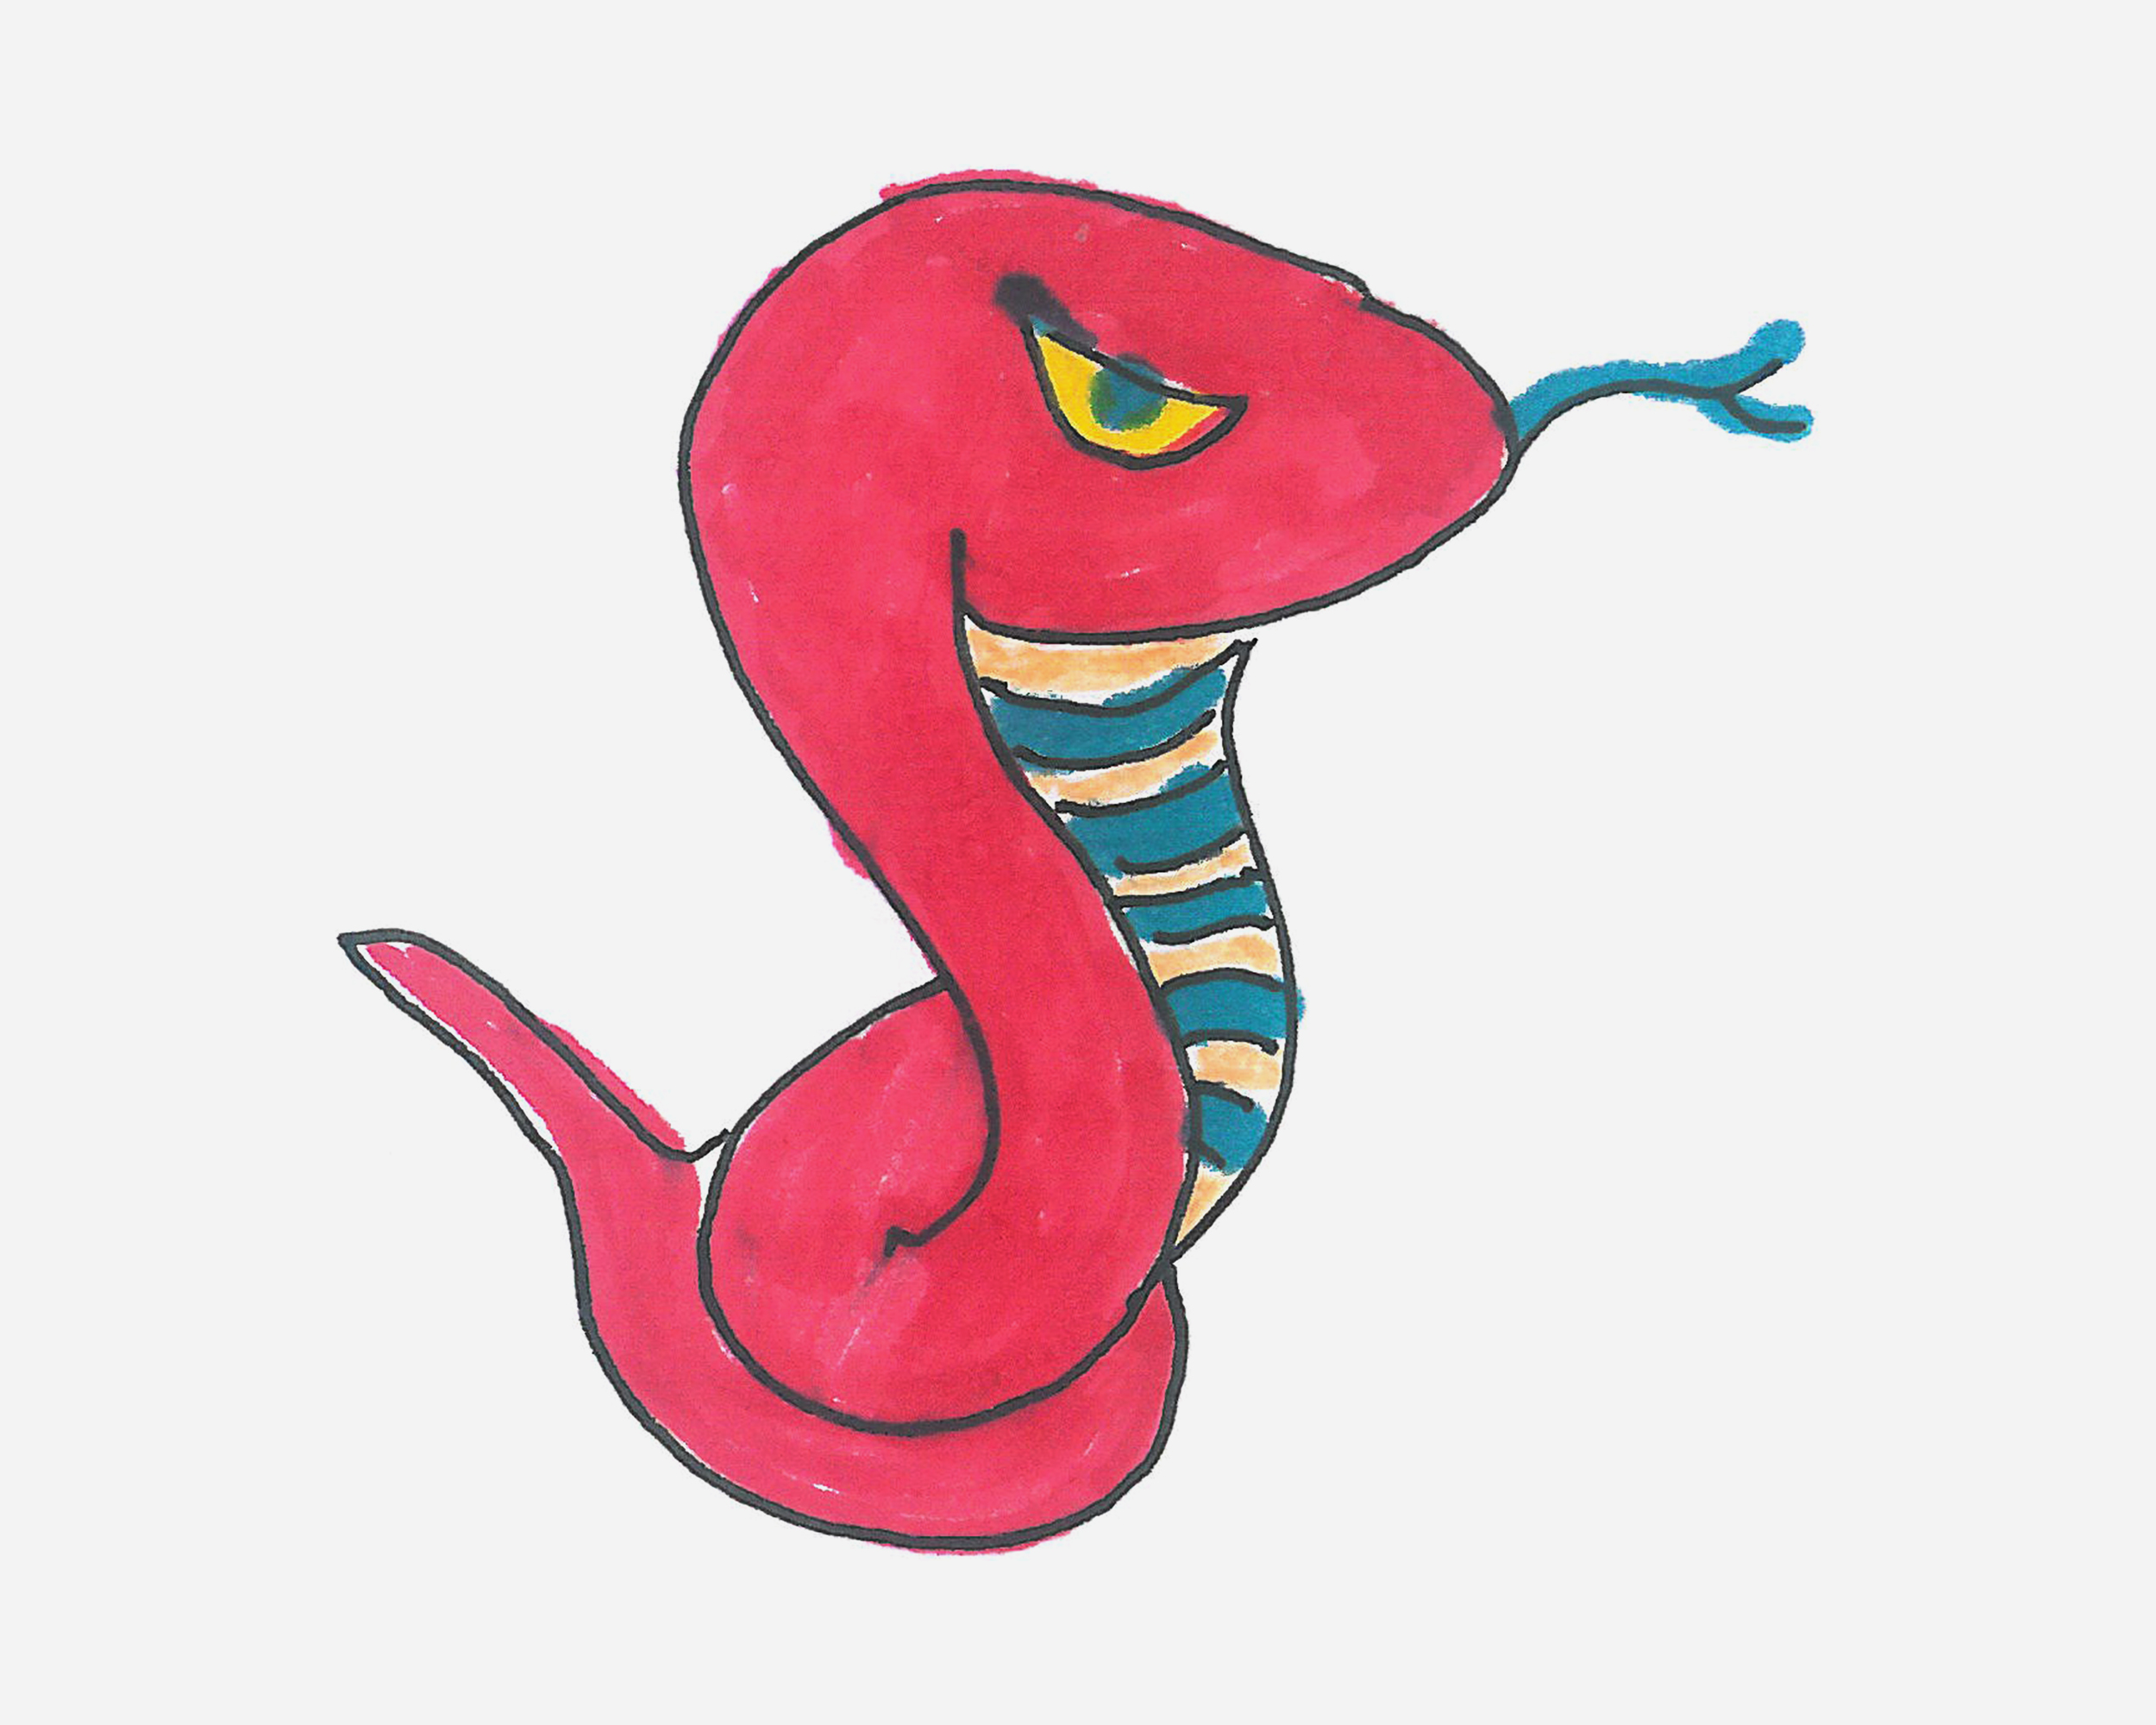 字母C简笔画卡通小蛇的画法图片步骤